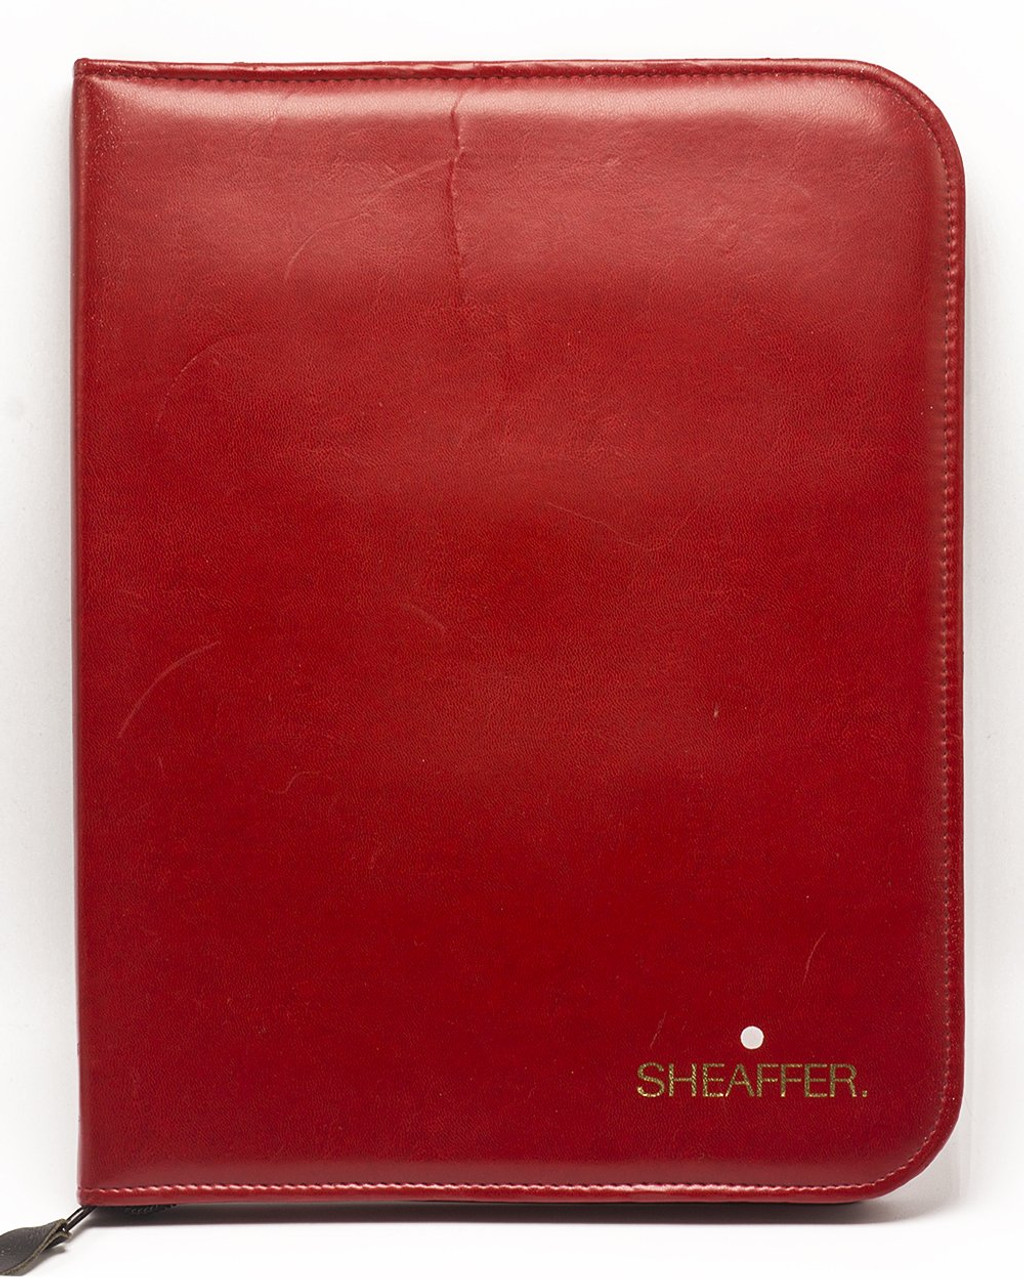 Sheaffer Pen Dealer Pen Case - Red Leather Binder Holds 48 Pens (Excellent Condition)